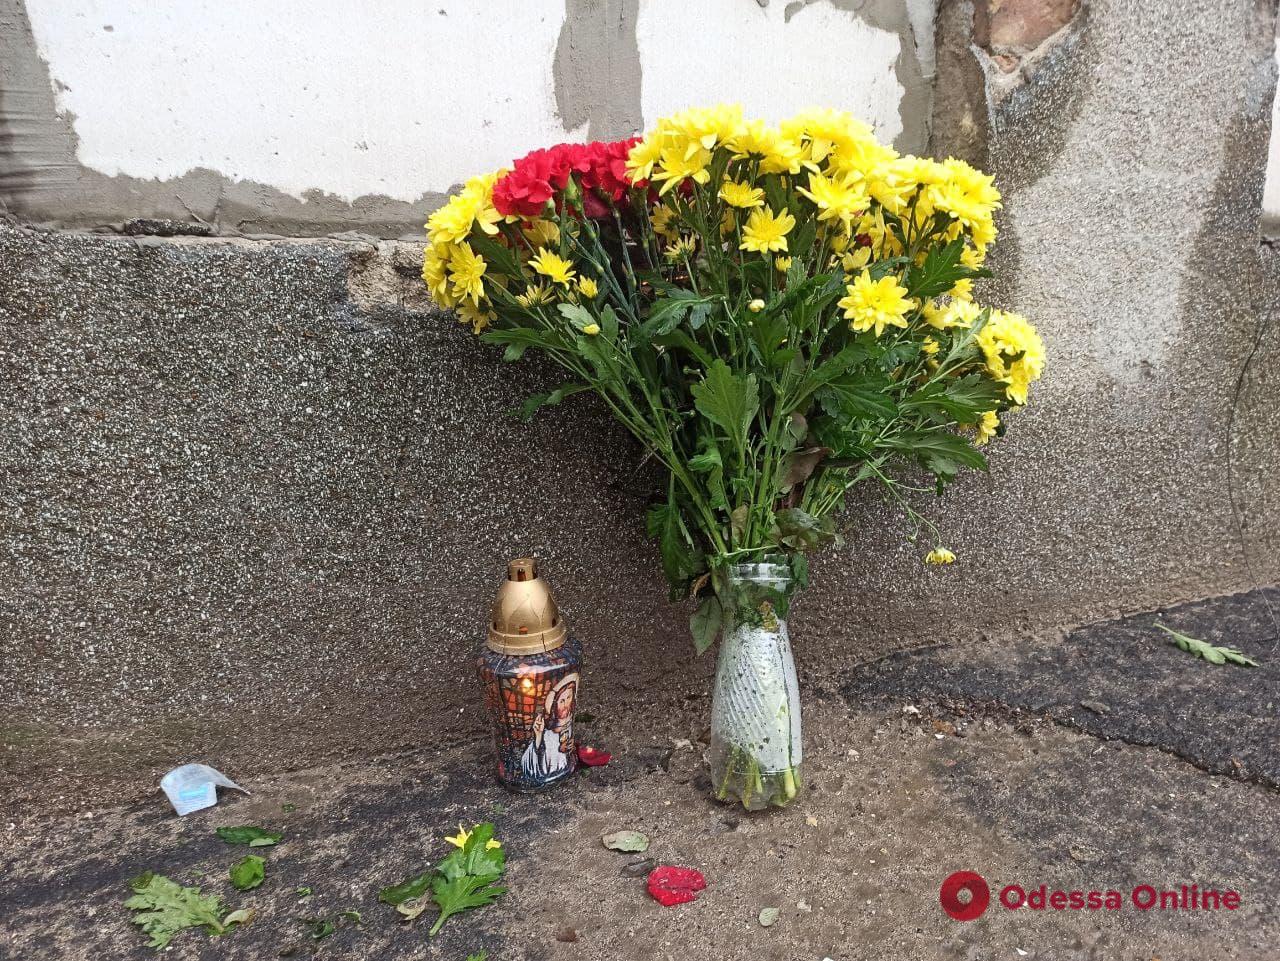 Годовщина трагедии на Троицкой: к сгоревшему колледжу несут цветы